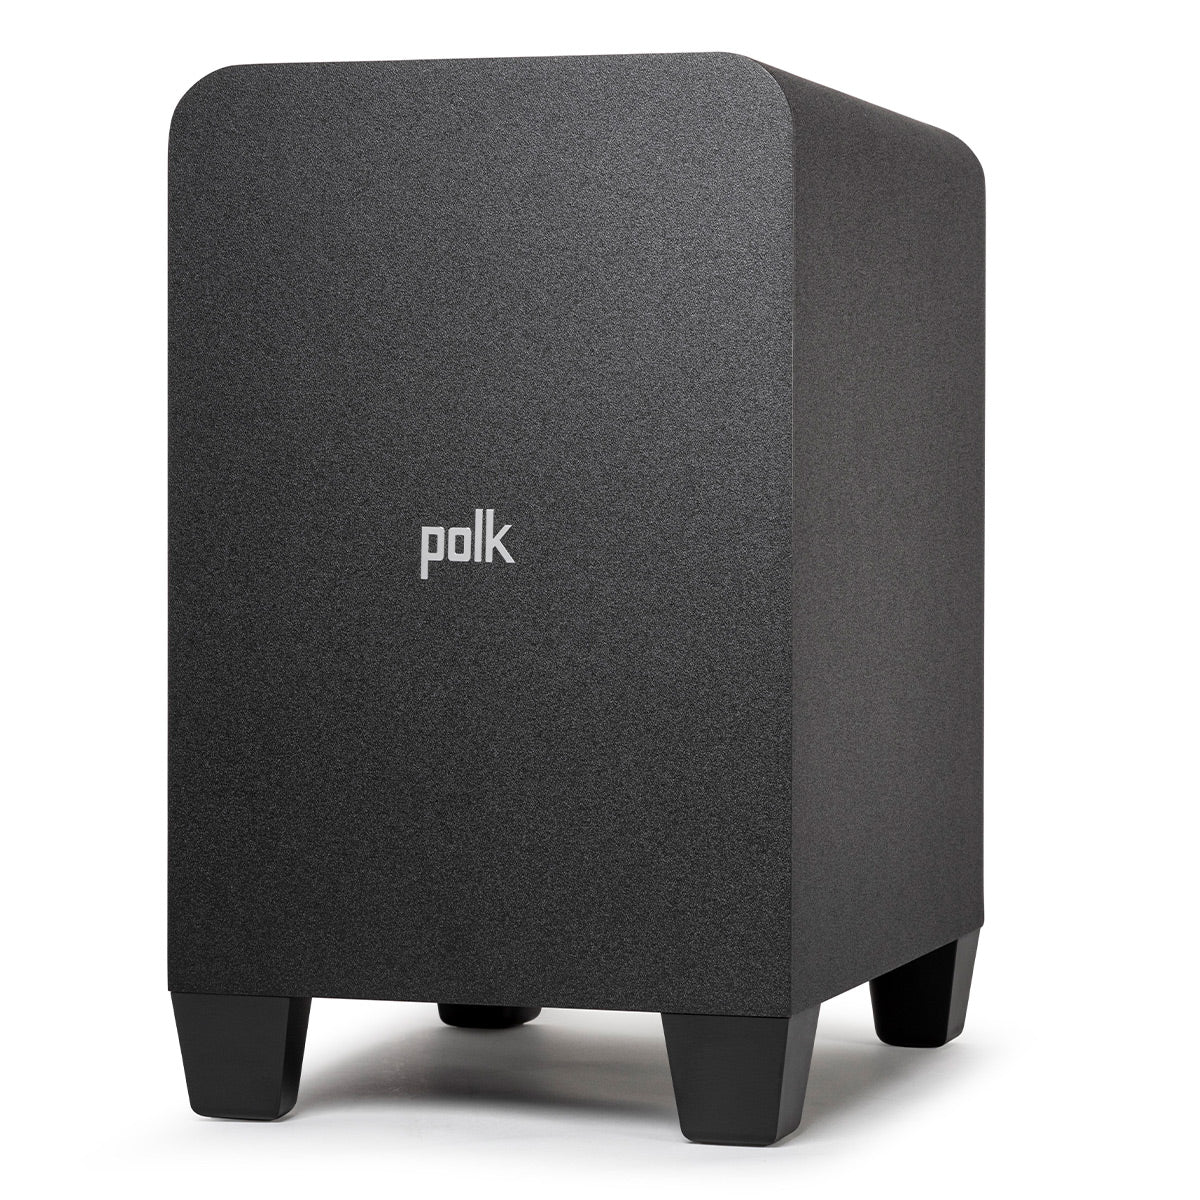 Polk Audio Signa S4 Dolby Atmos 3.1.2 Soundbar with Wireless Subwoofer